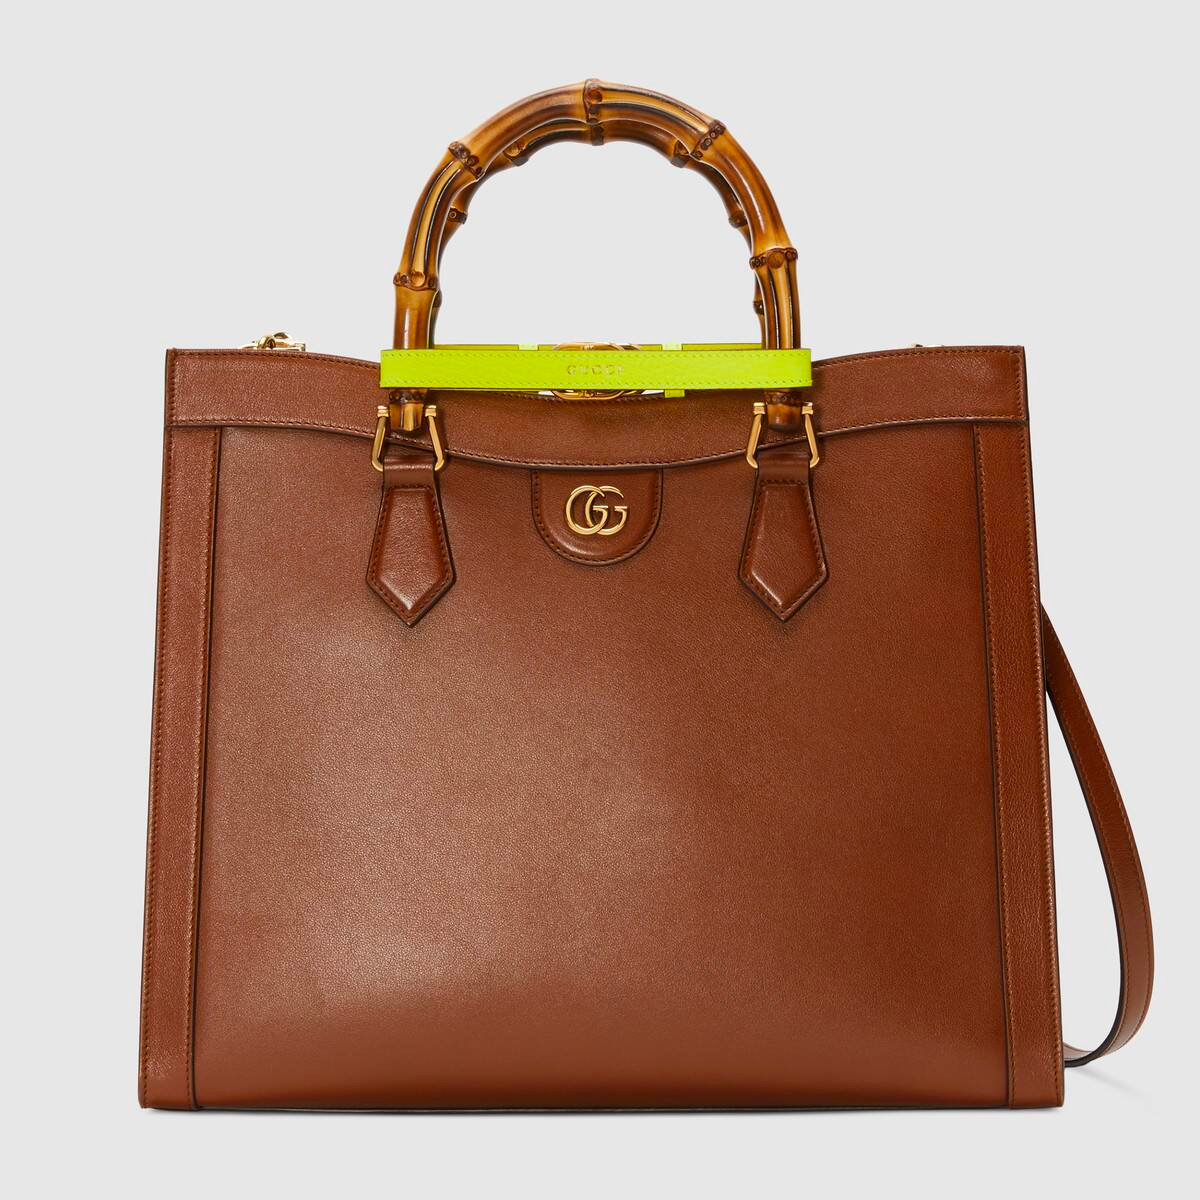 Gucci Diana Bag in Medium